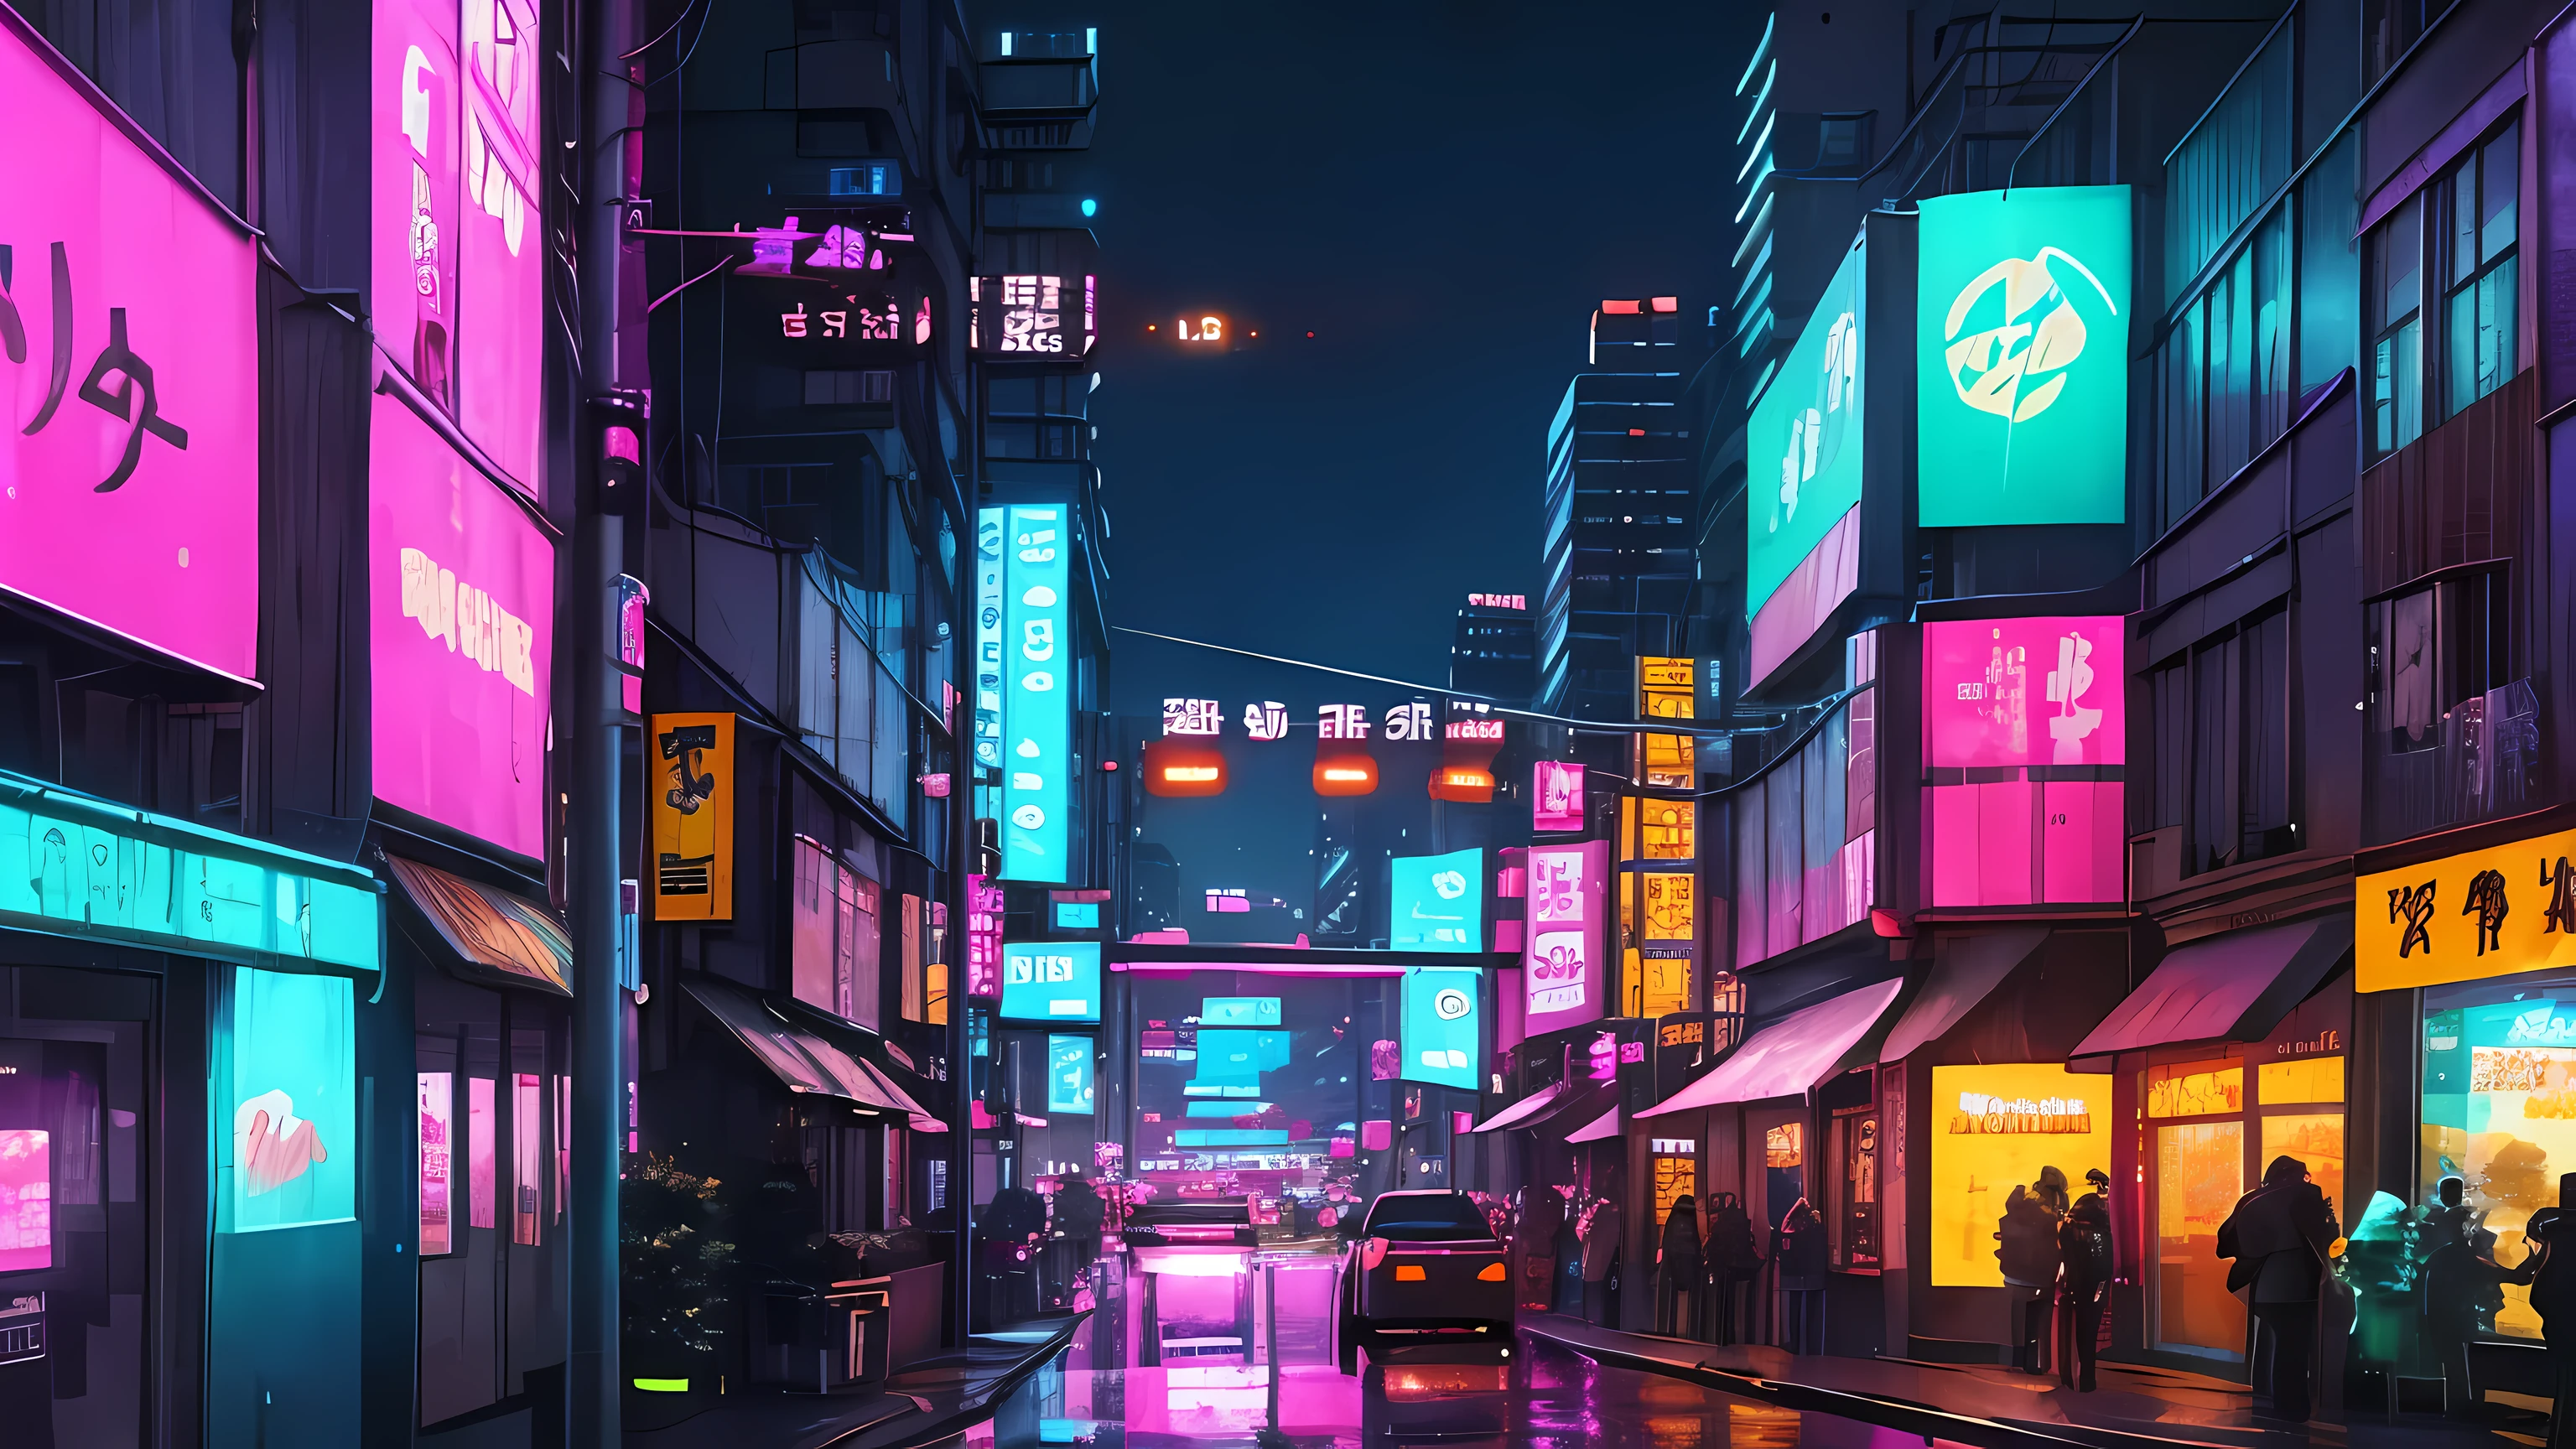 ネオンライトとネオンの建物のあるネオンシティの街路風景, in a futuristic サイバーパンクシティ, detailed neon サイバーパンクシティ, 未来的なサイバーパンク東京の夜, 未来的な街路, in サイバーパンクシティ, 未来的な街, futuristic サイバーパンクシティ, サイバーパンク 未来的 ネオン, サイバーパンクアートスタイル, サイバーパンクネオンライト, サイバーパンクシティscape, サイバーパンクシティ, 背景のネオンシティ, サイバーパンクシティ landscape